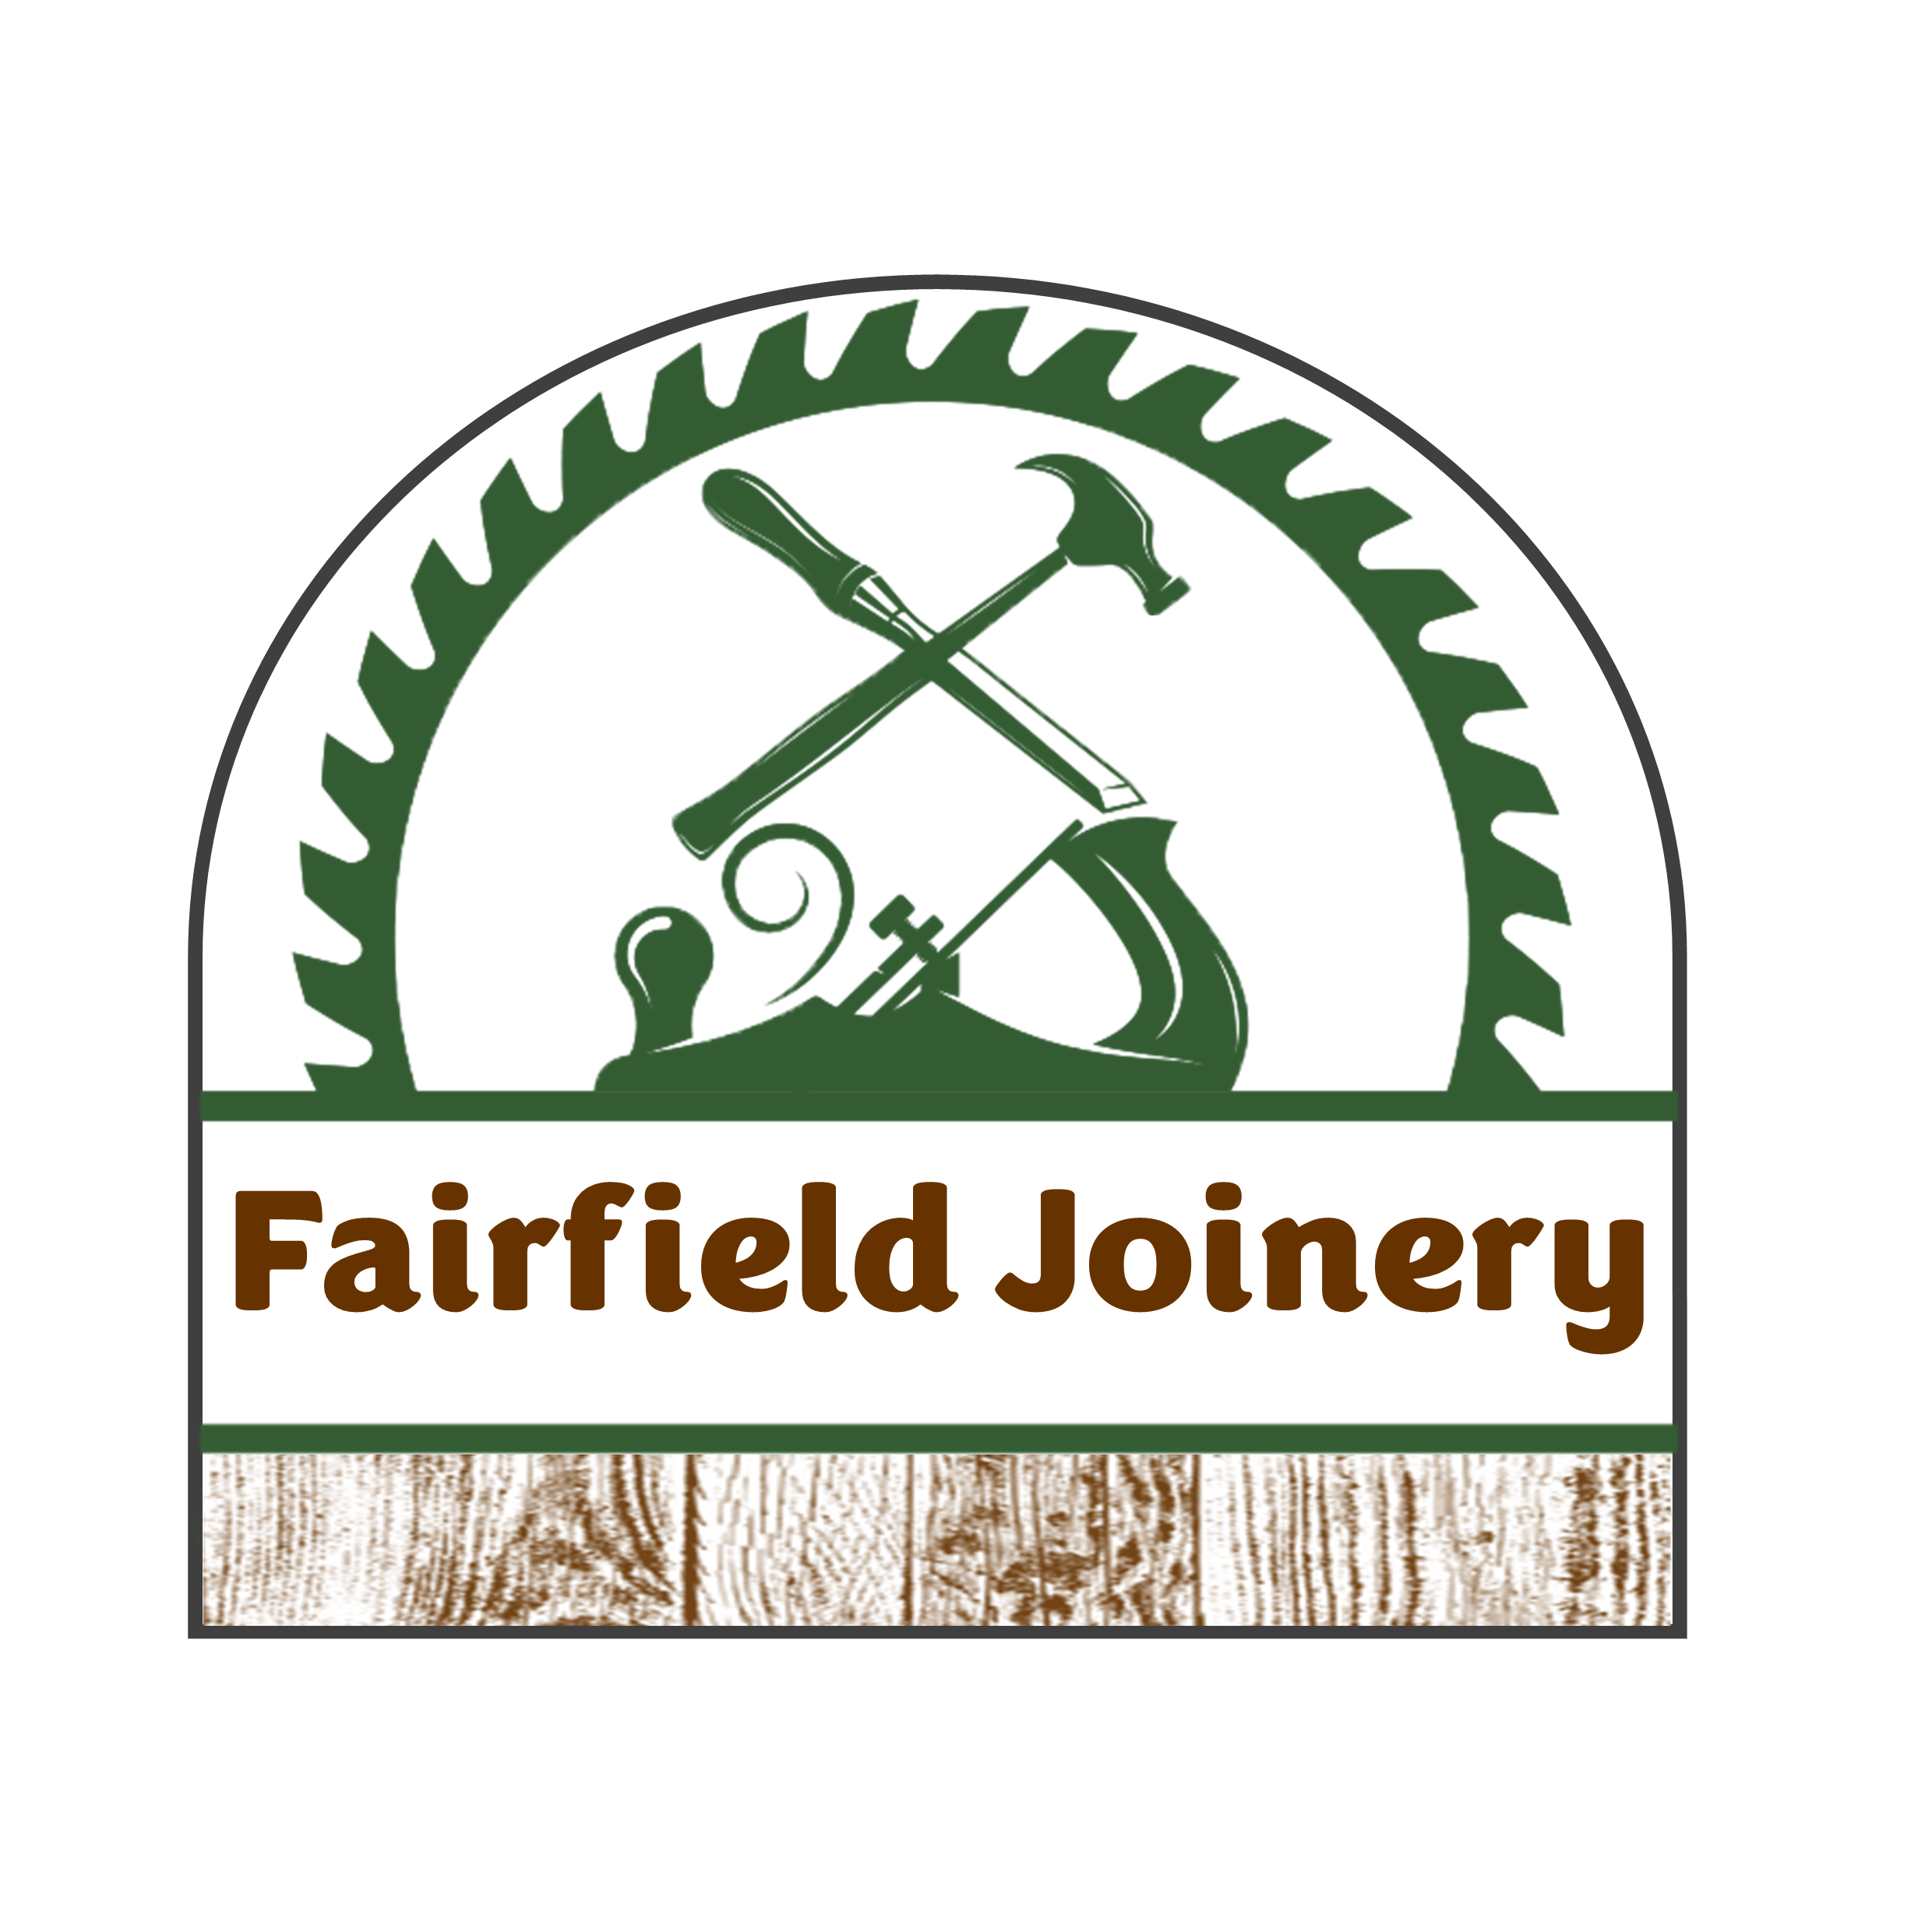 Fairfield Joinery